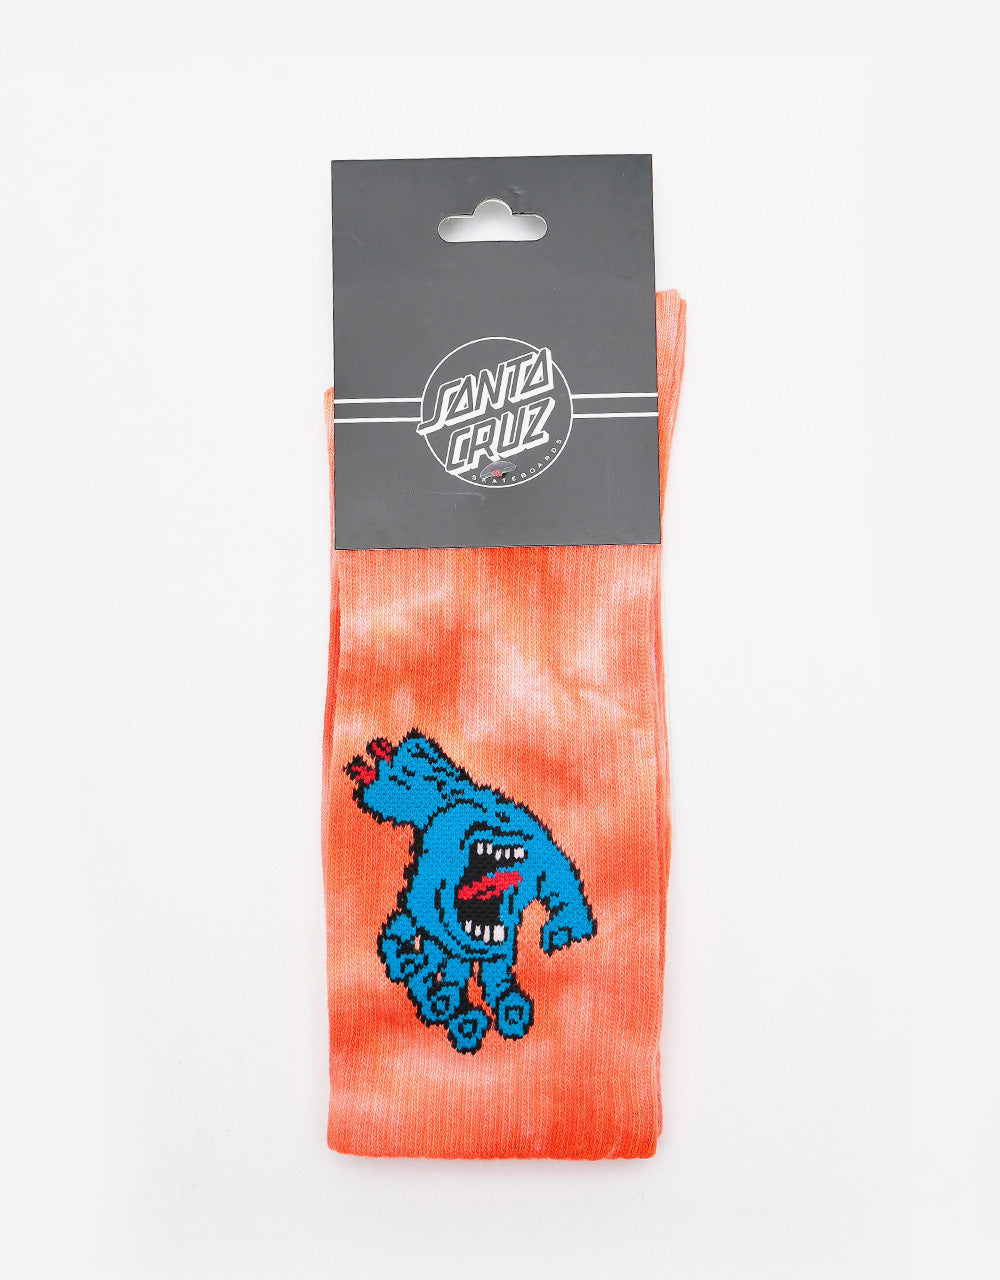 Santa Cruz Screaming Hand Tie Dye Socks - Red Tie Dye